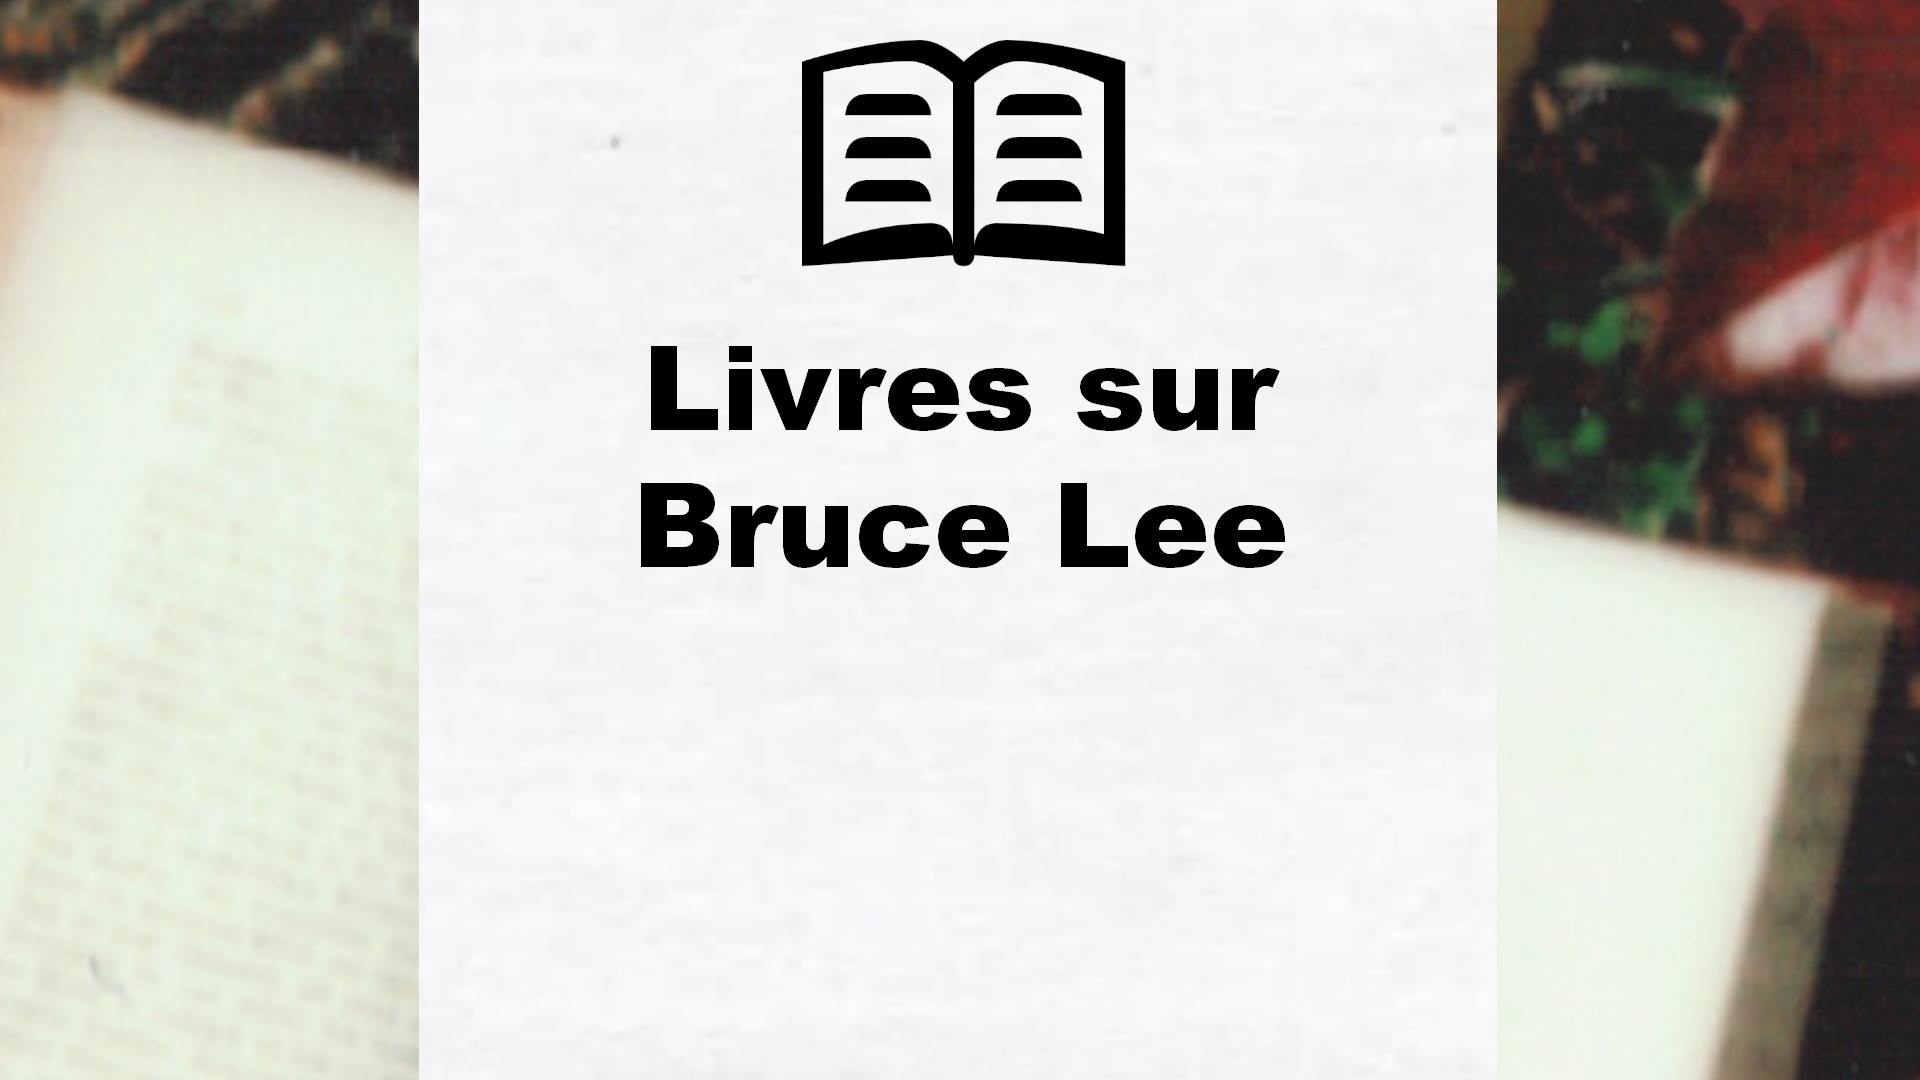 Livres sur Bruce Lee